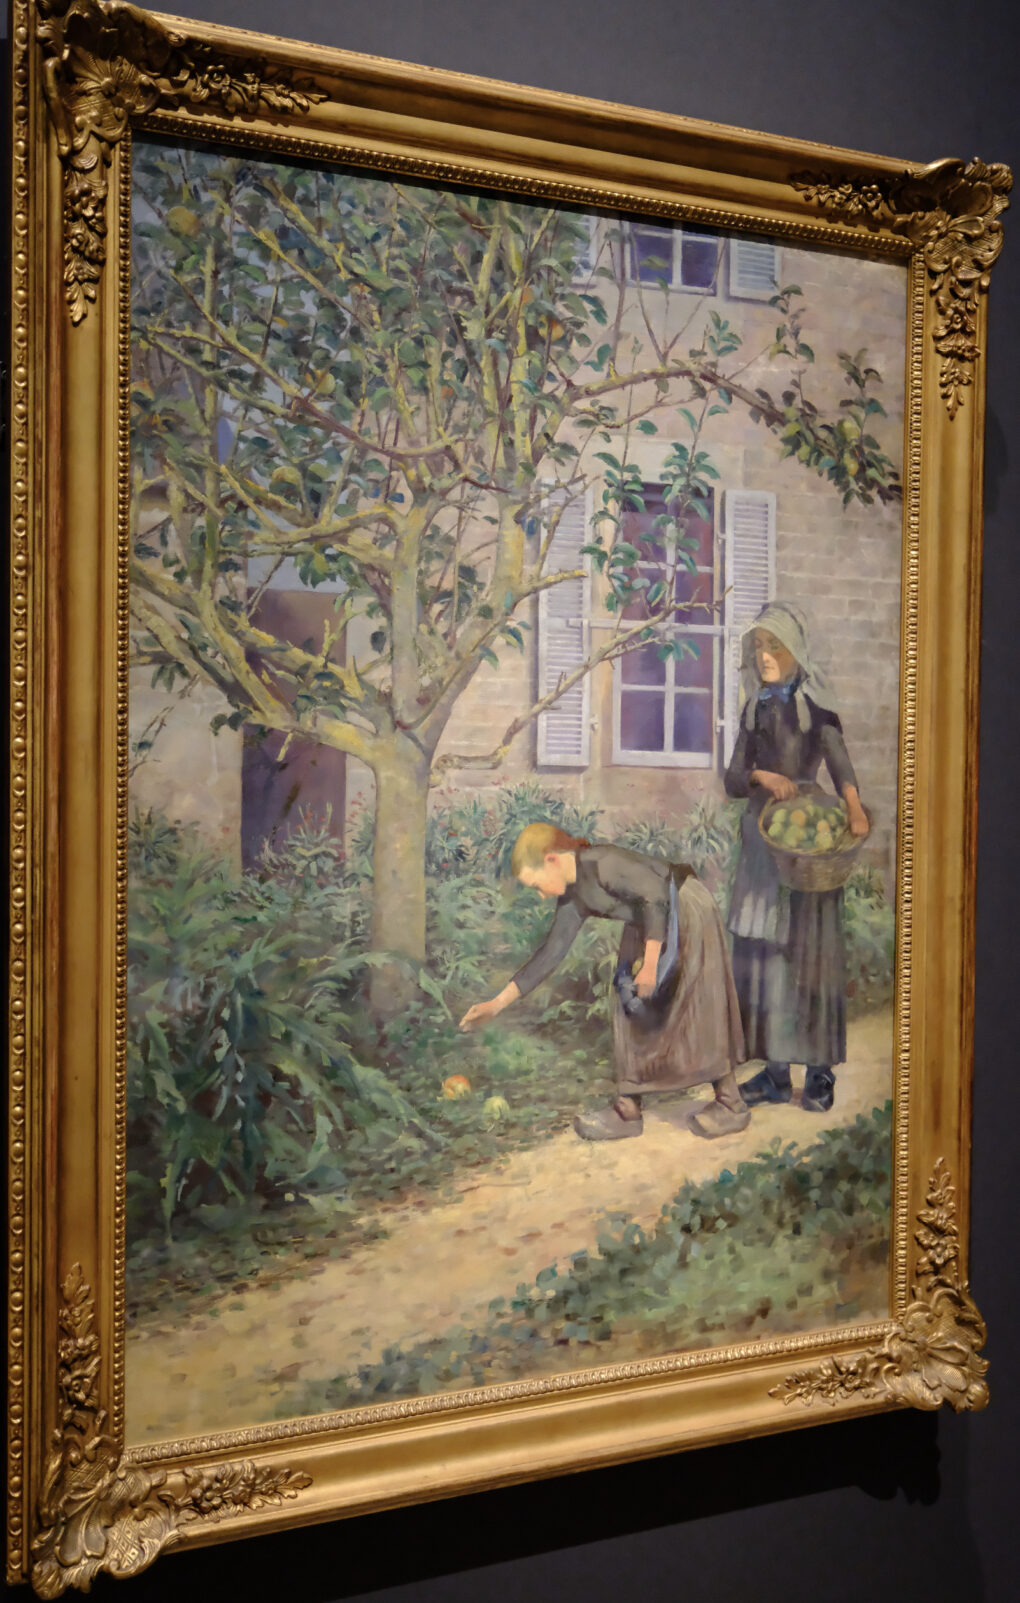 久米桂一郎　《林檎拾い》  1892年　油彩、カンヴァス　久米美術館